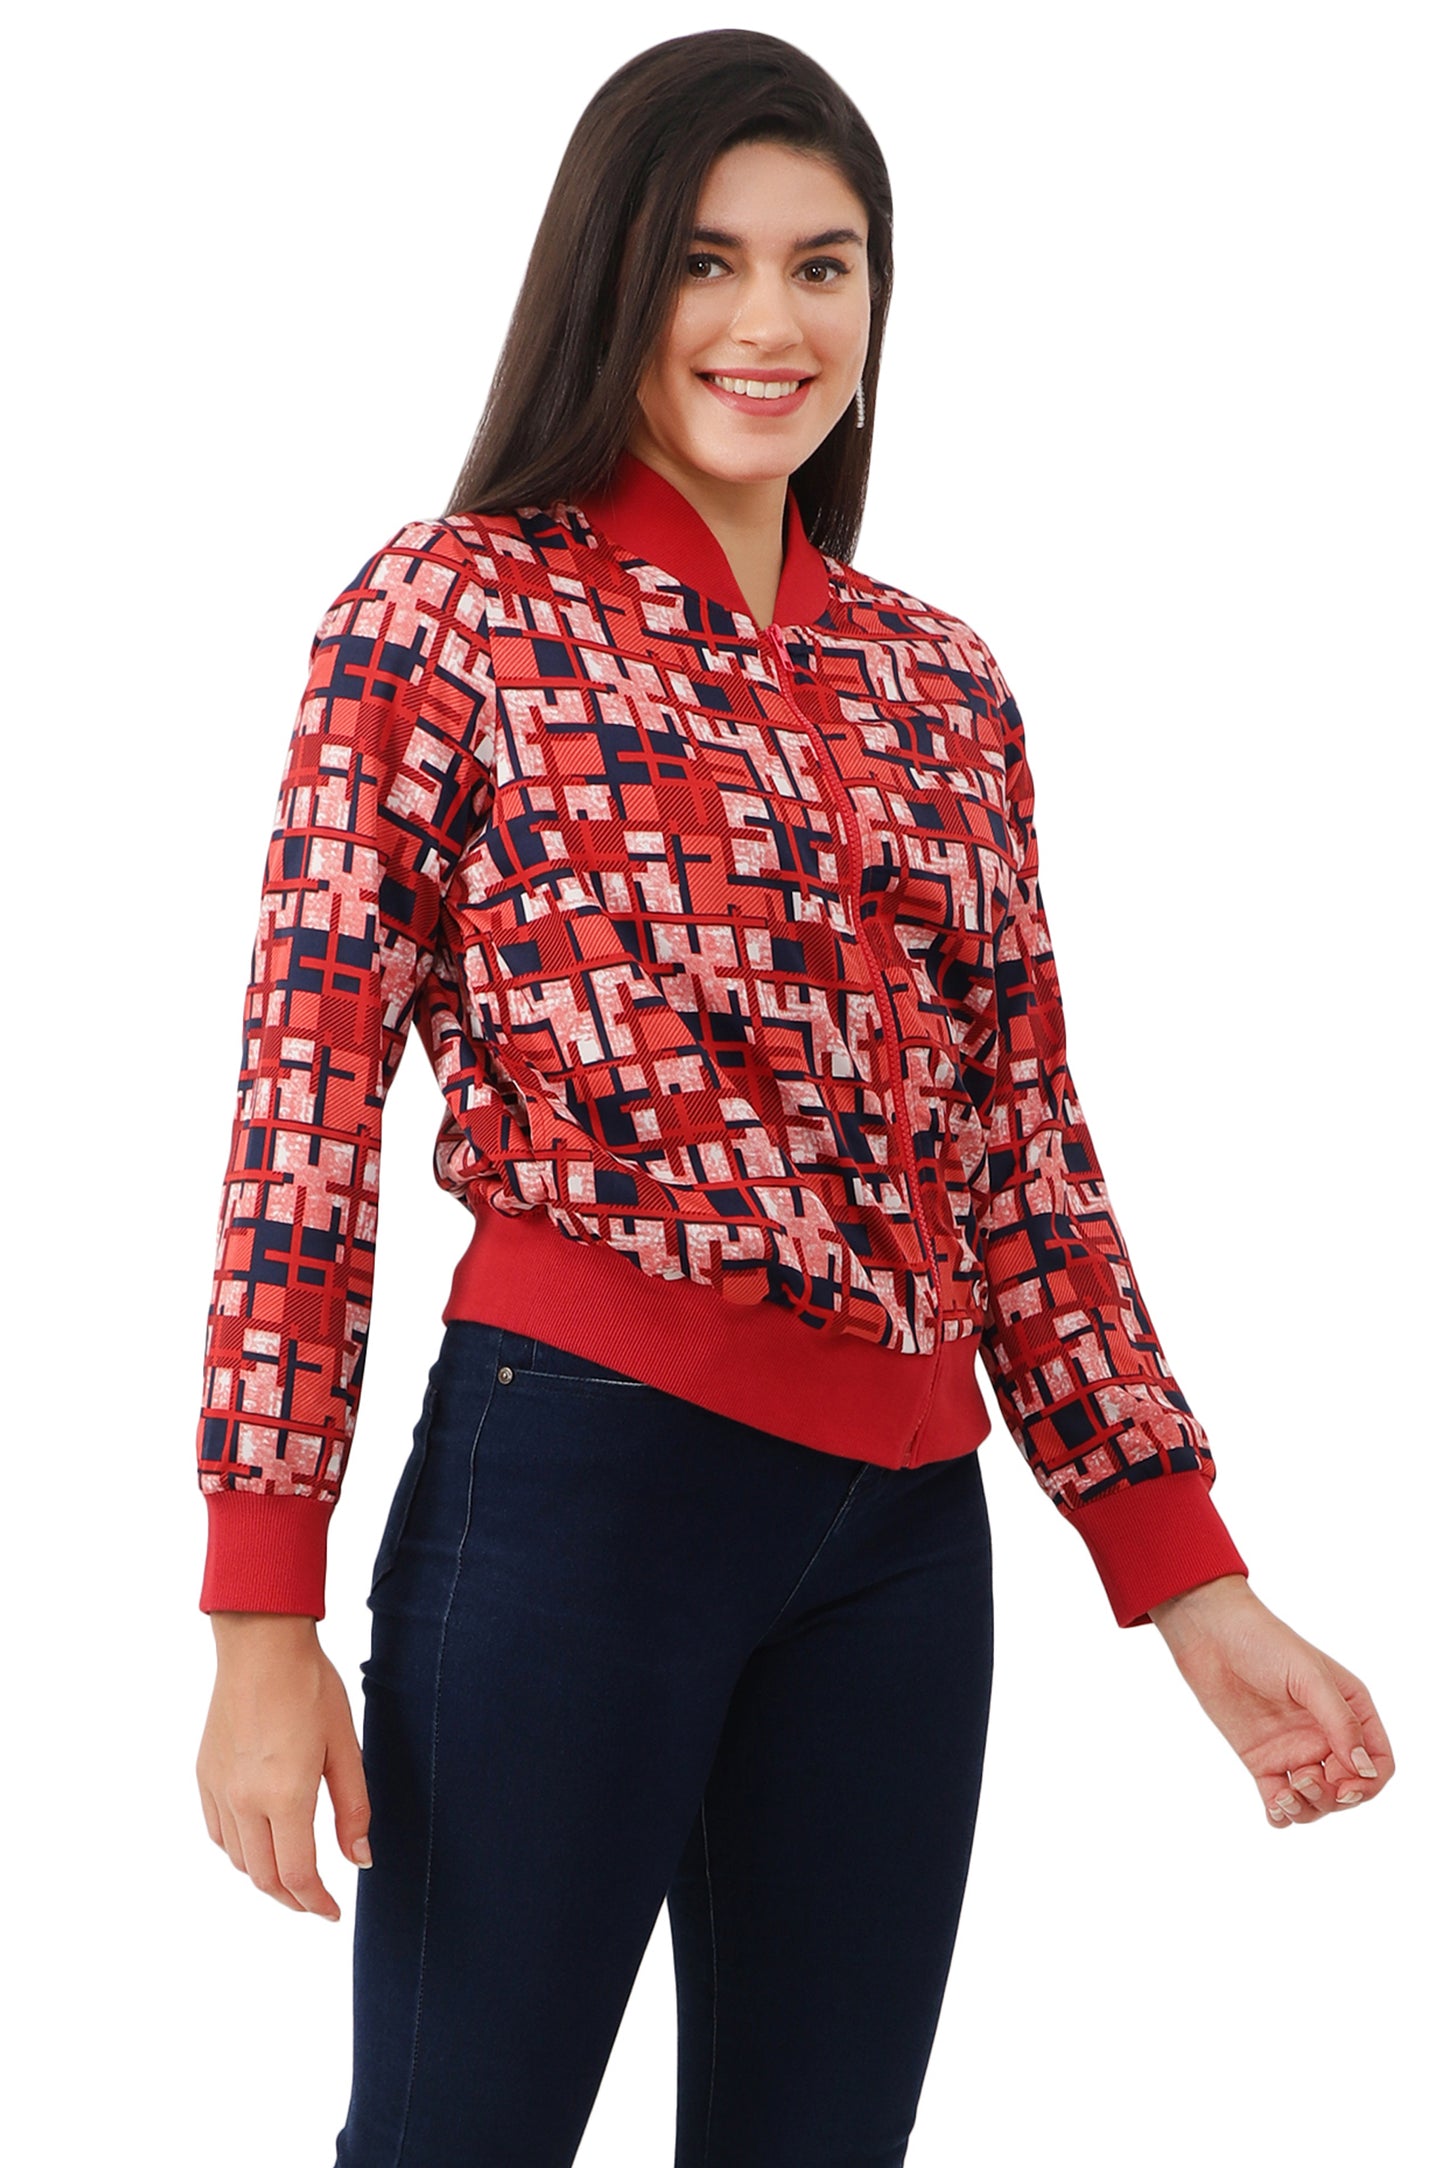 NUEVOSDAMAS Women Printed Full Sleeve Bomber jacket | Latest Stylish Checks Printed Women Jacket | Light Weight Crepe Jacket for women_Red multi